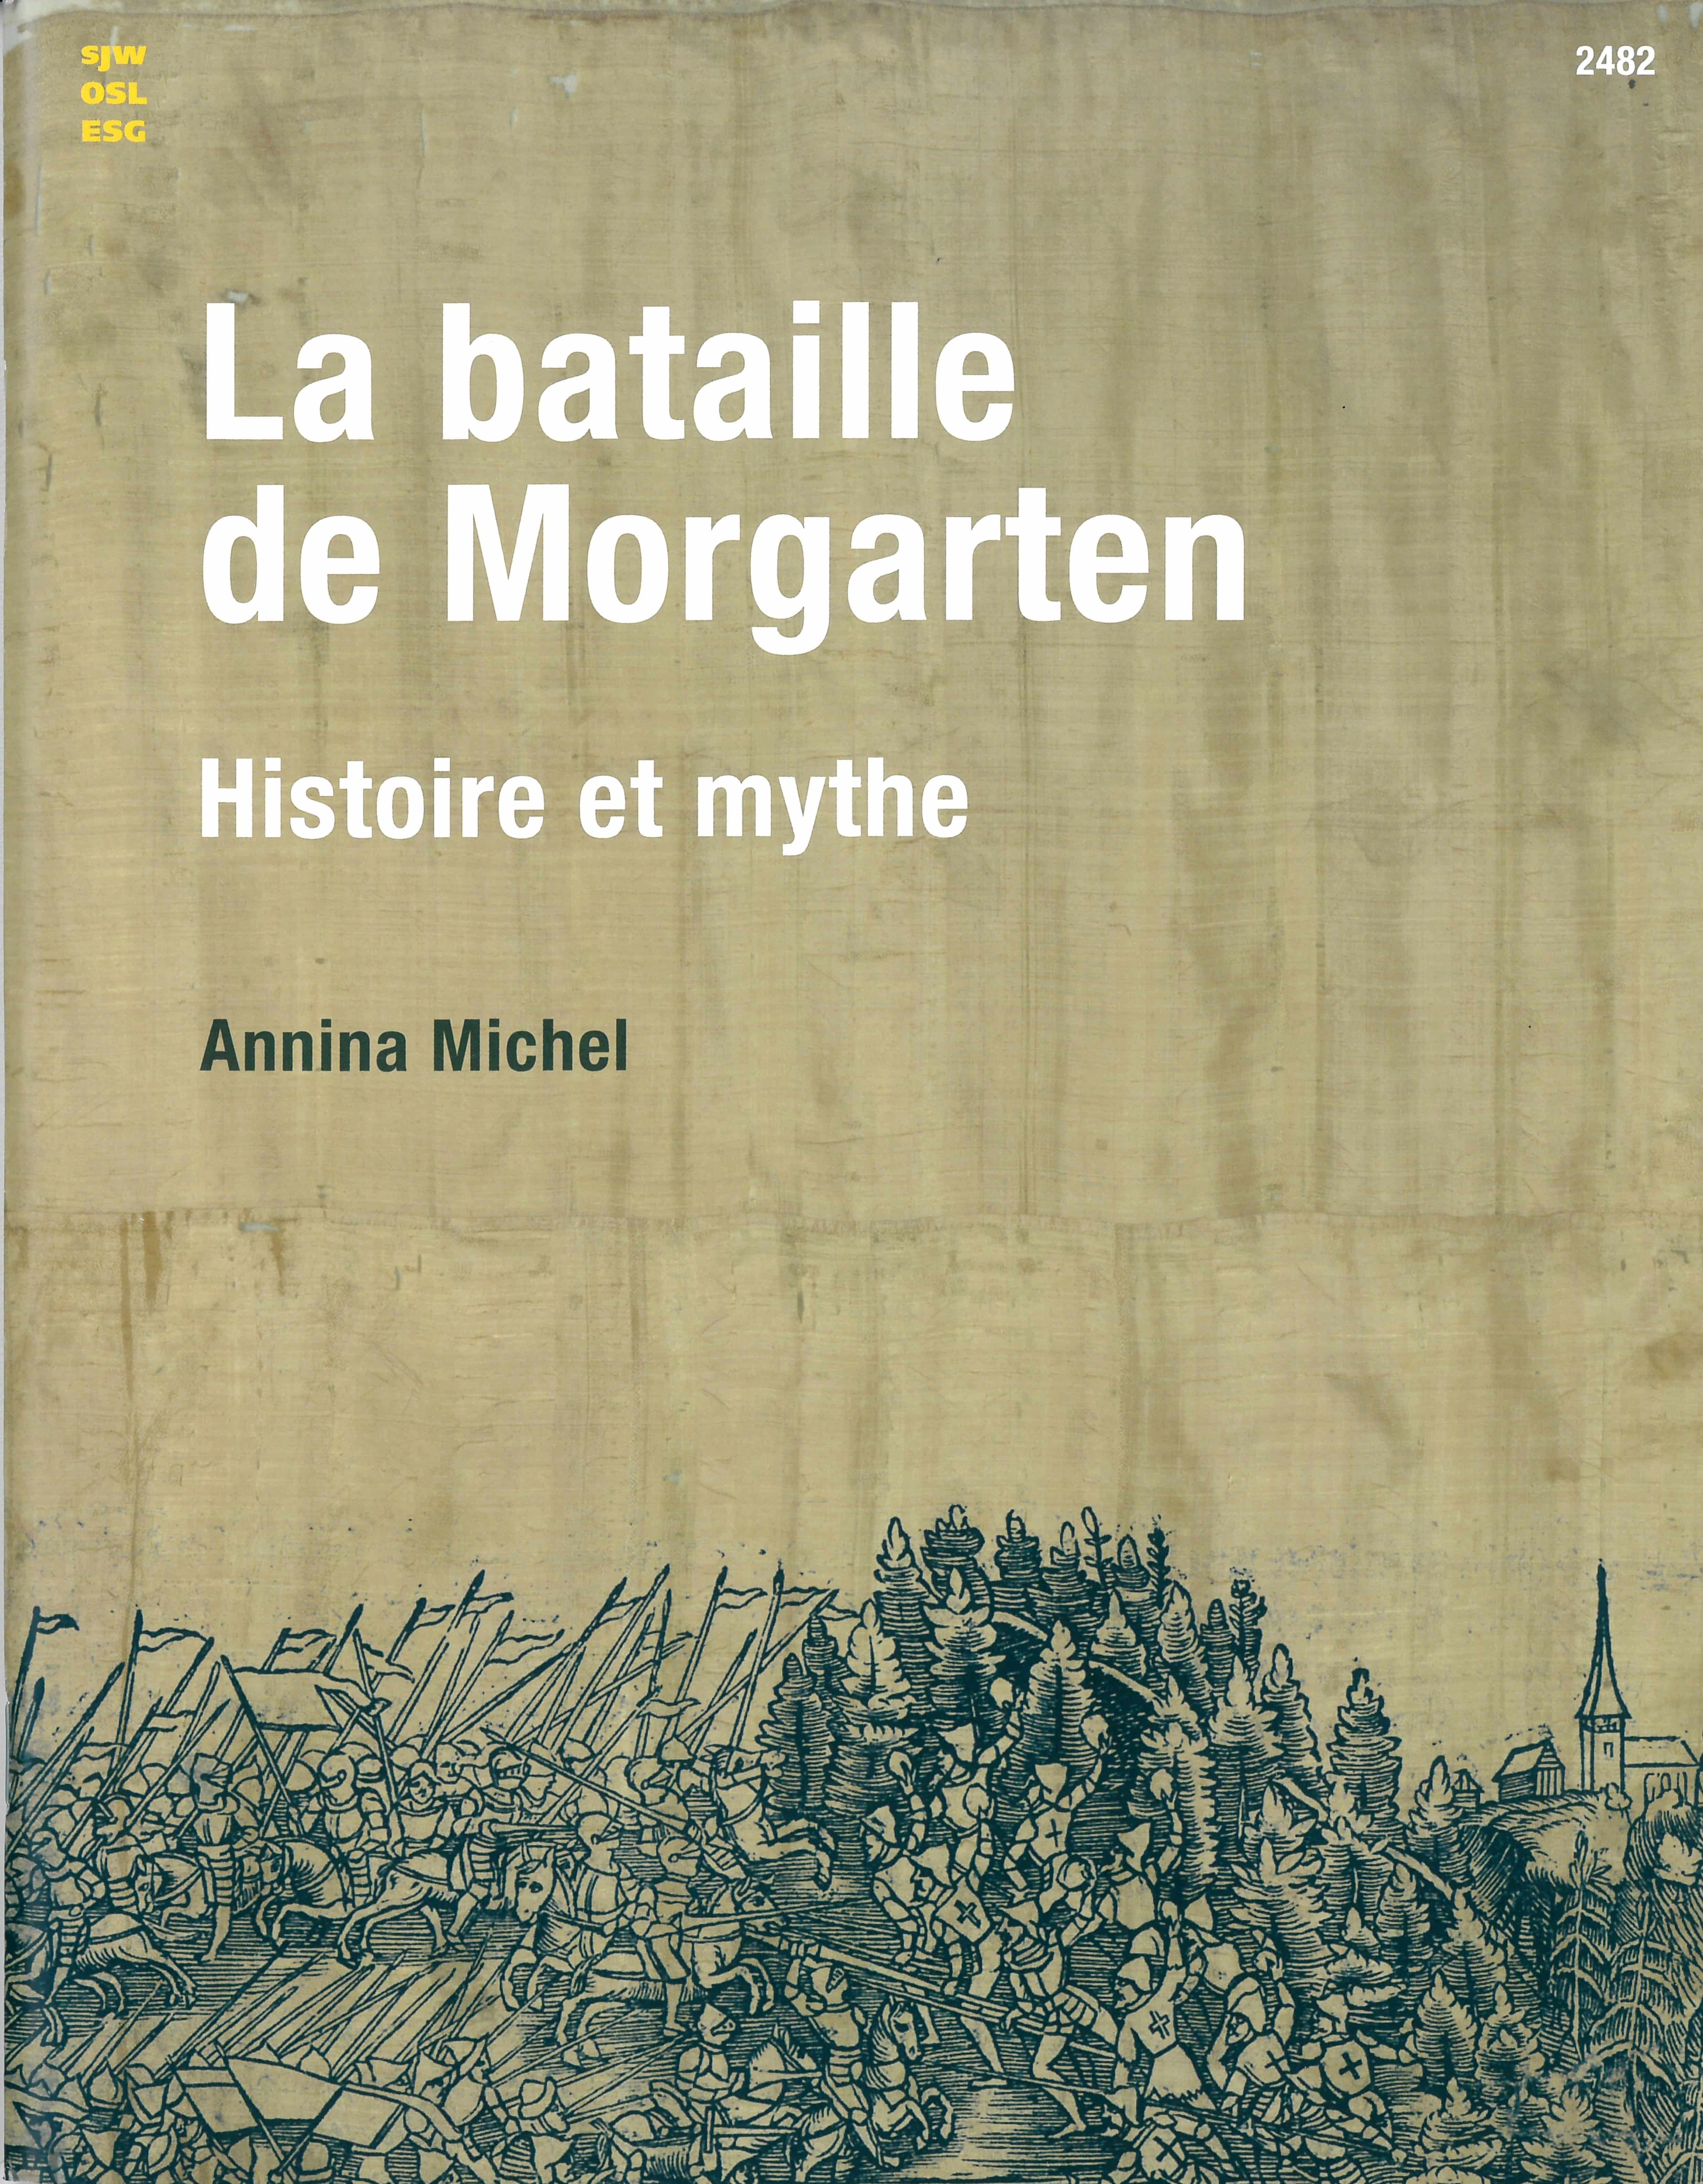 La bataille de Morgarten – Histoire et mythe, un livre d’Annina Michel, éditions de l'OSL, politique, Suisse